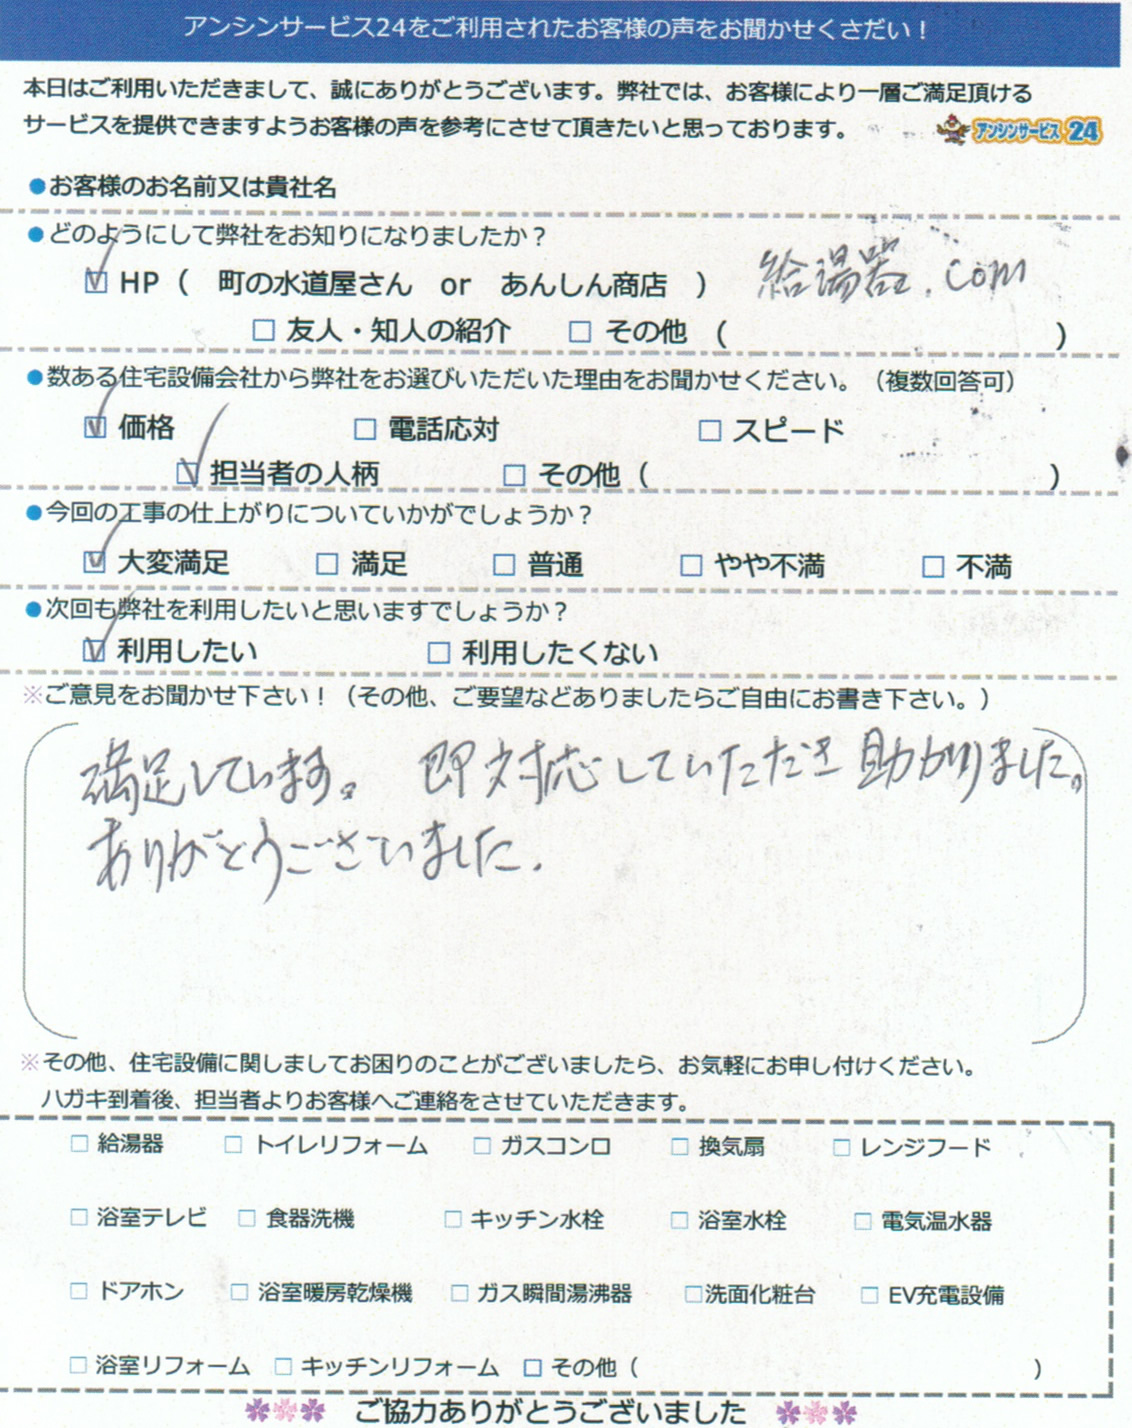 【ハガキ】神戸市東灘区ガス給湯器交換工事お客様の声【アンシンサービス24】